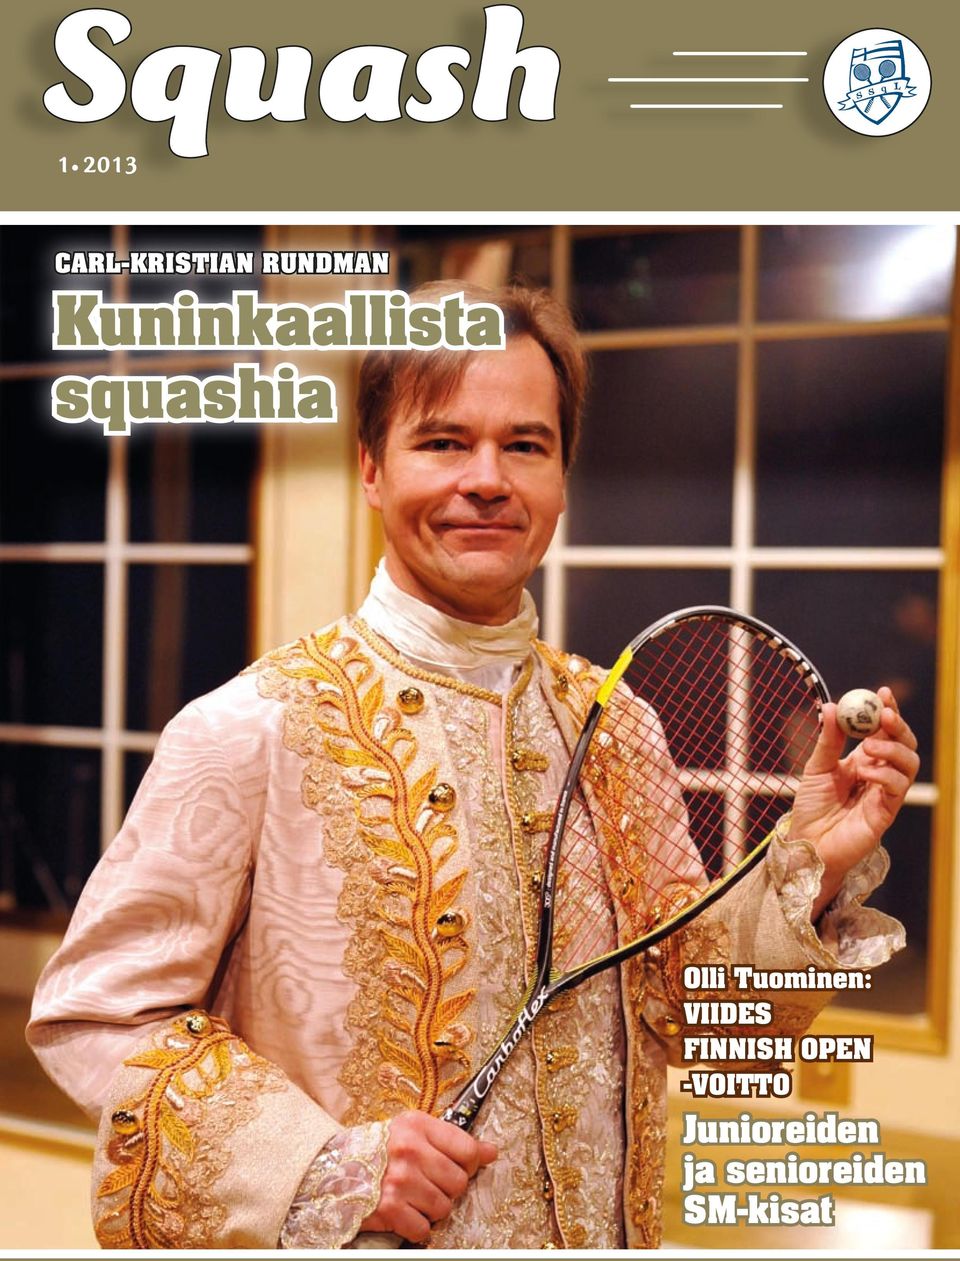 Olli Tuominen: Viides Finnish Open